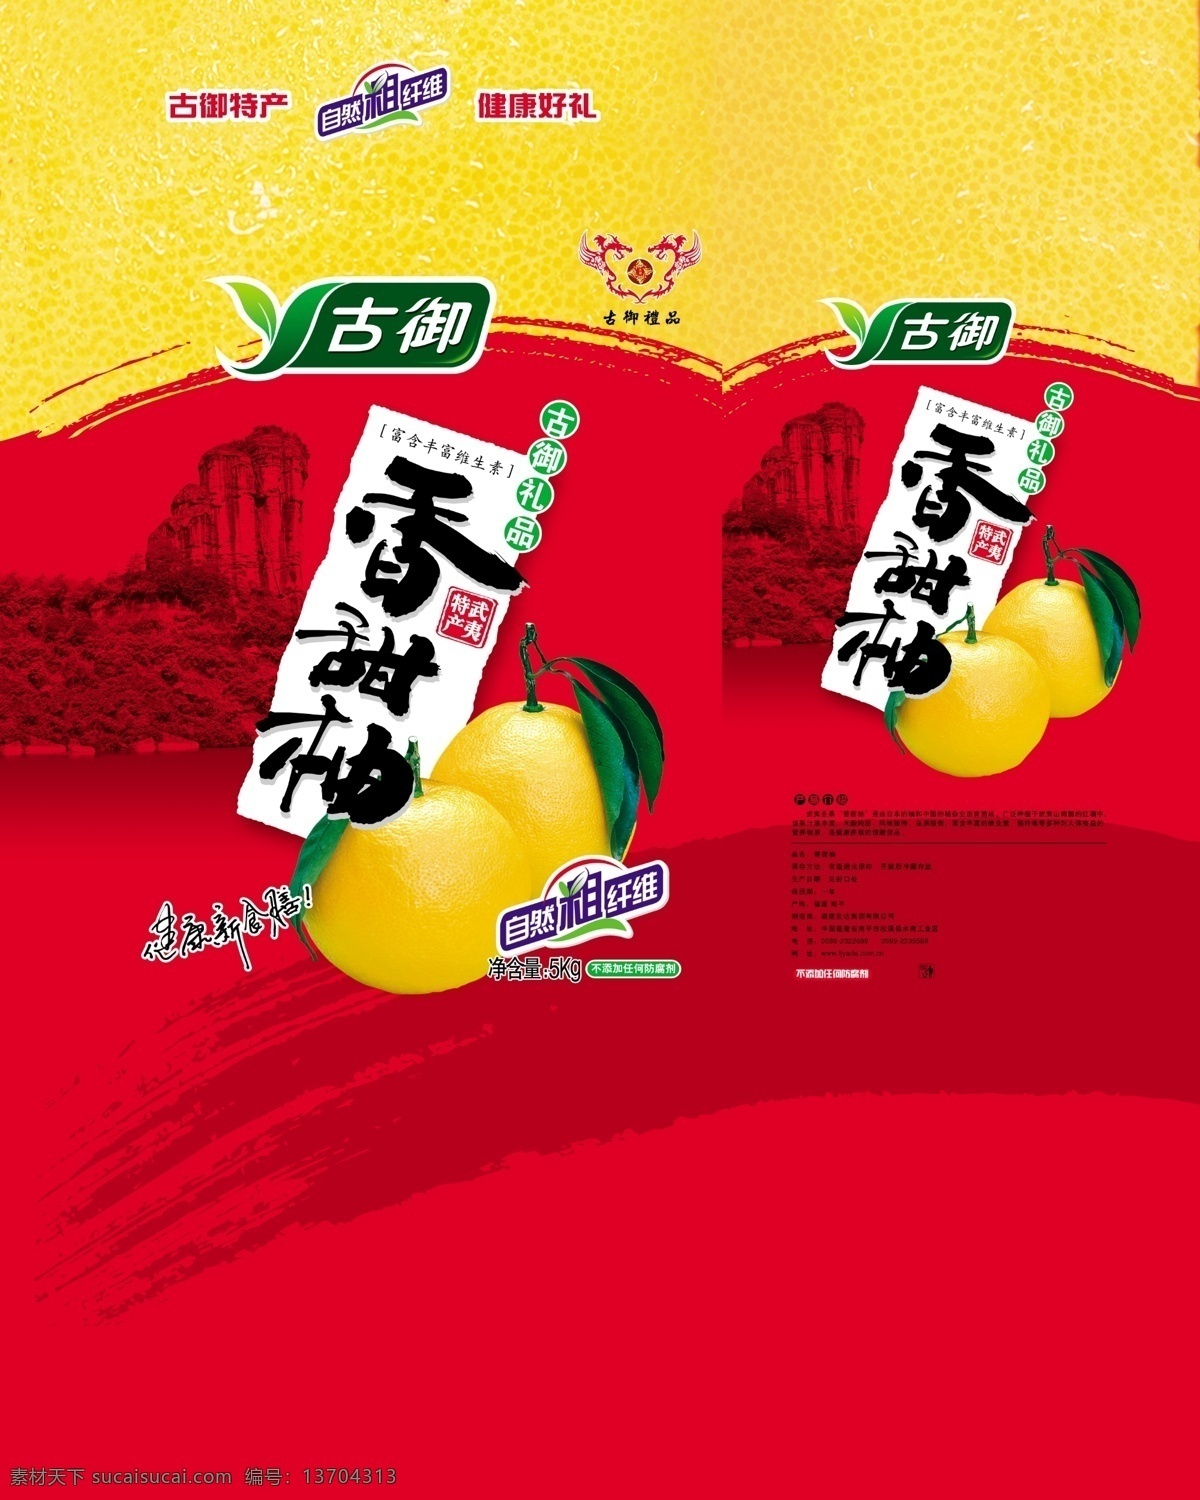 古御香甜柚 柚子 柚 蜜柚 柚子包装 水果 水果包装 香甜柚 包装设计 广告设计模板 源文件